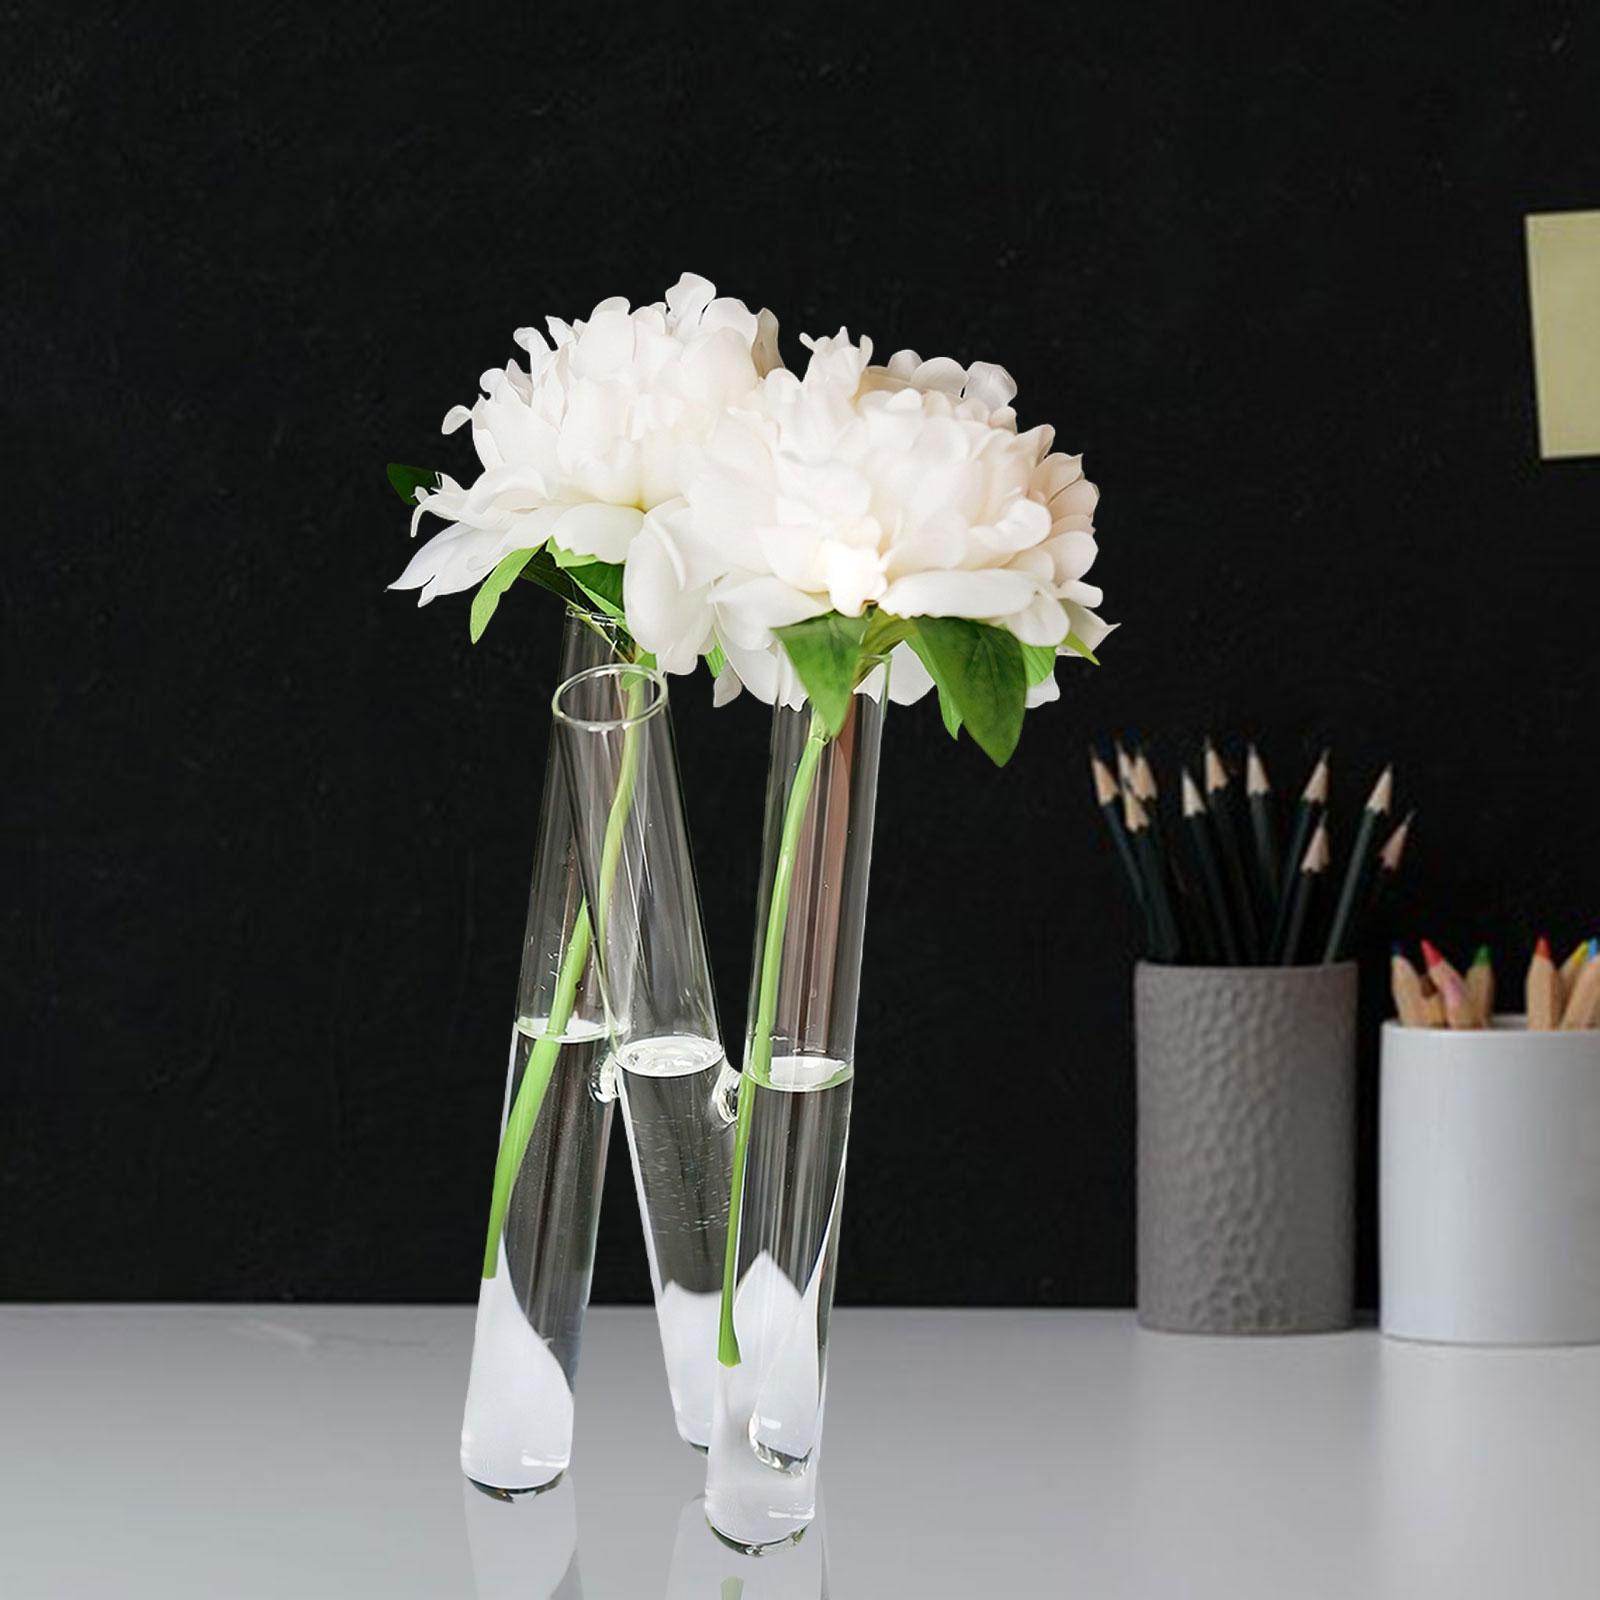 Test Tube Flower Vase 3 Test Tubes Art for Floral Arrangement Indoor Bedroom